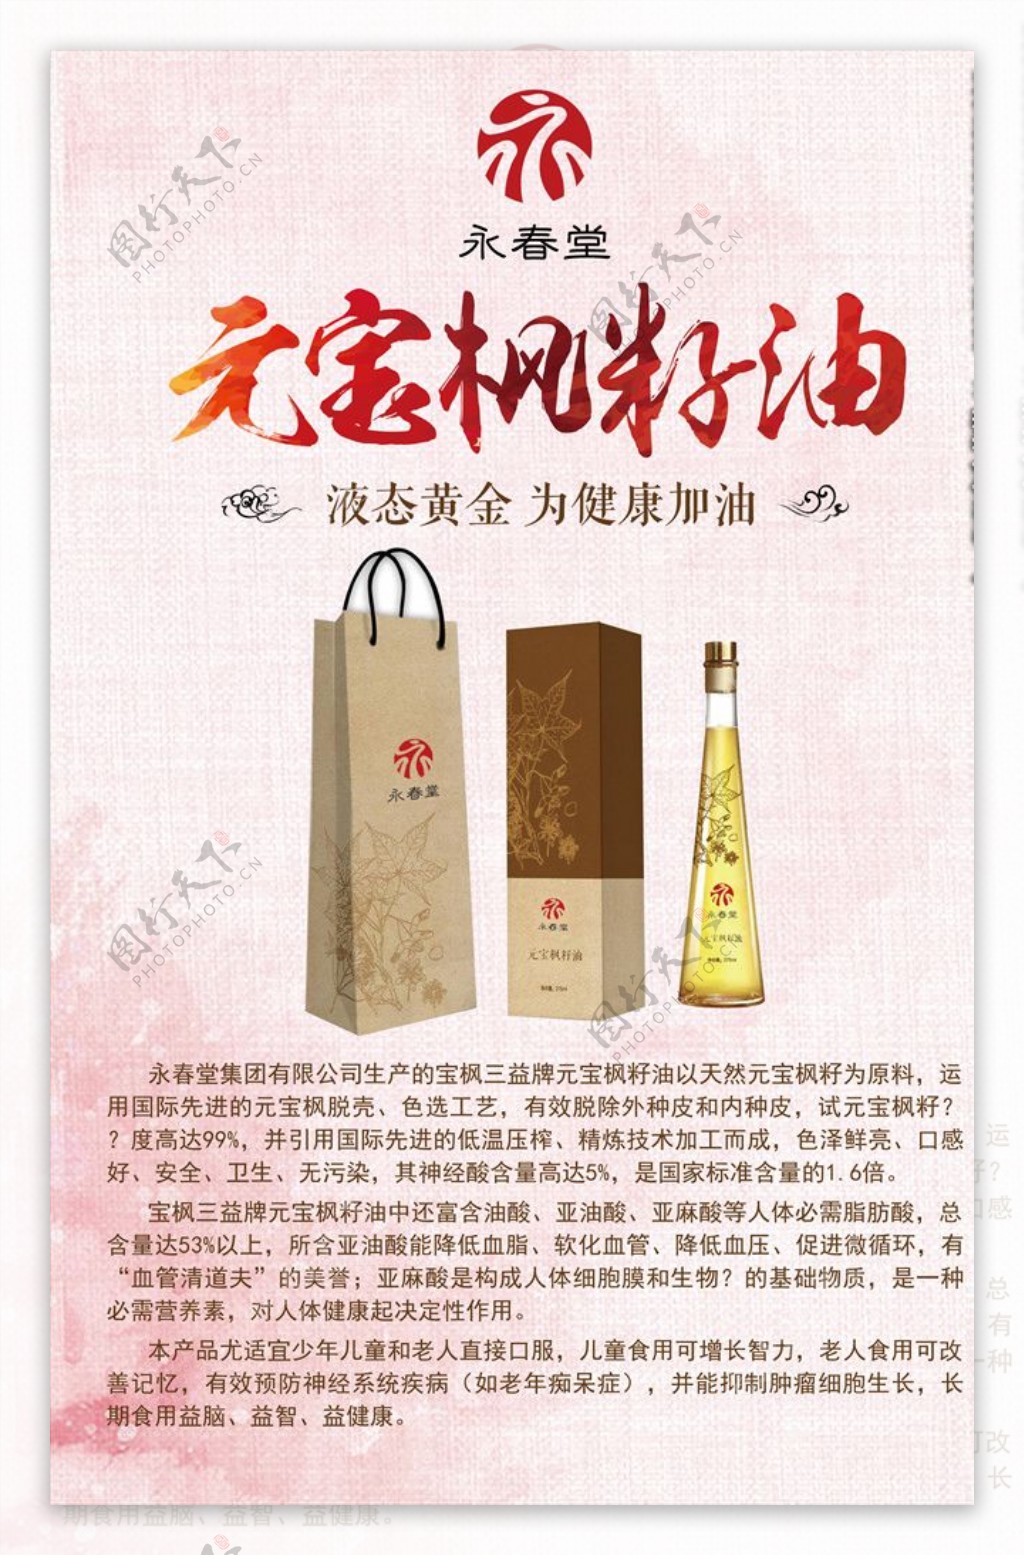 元宝枫籽油广告设计